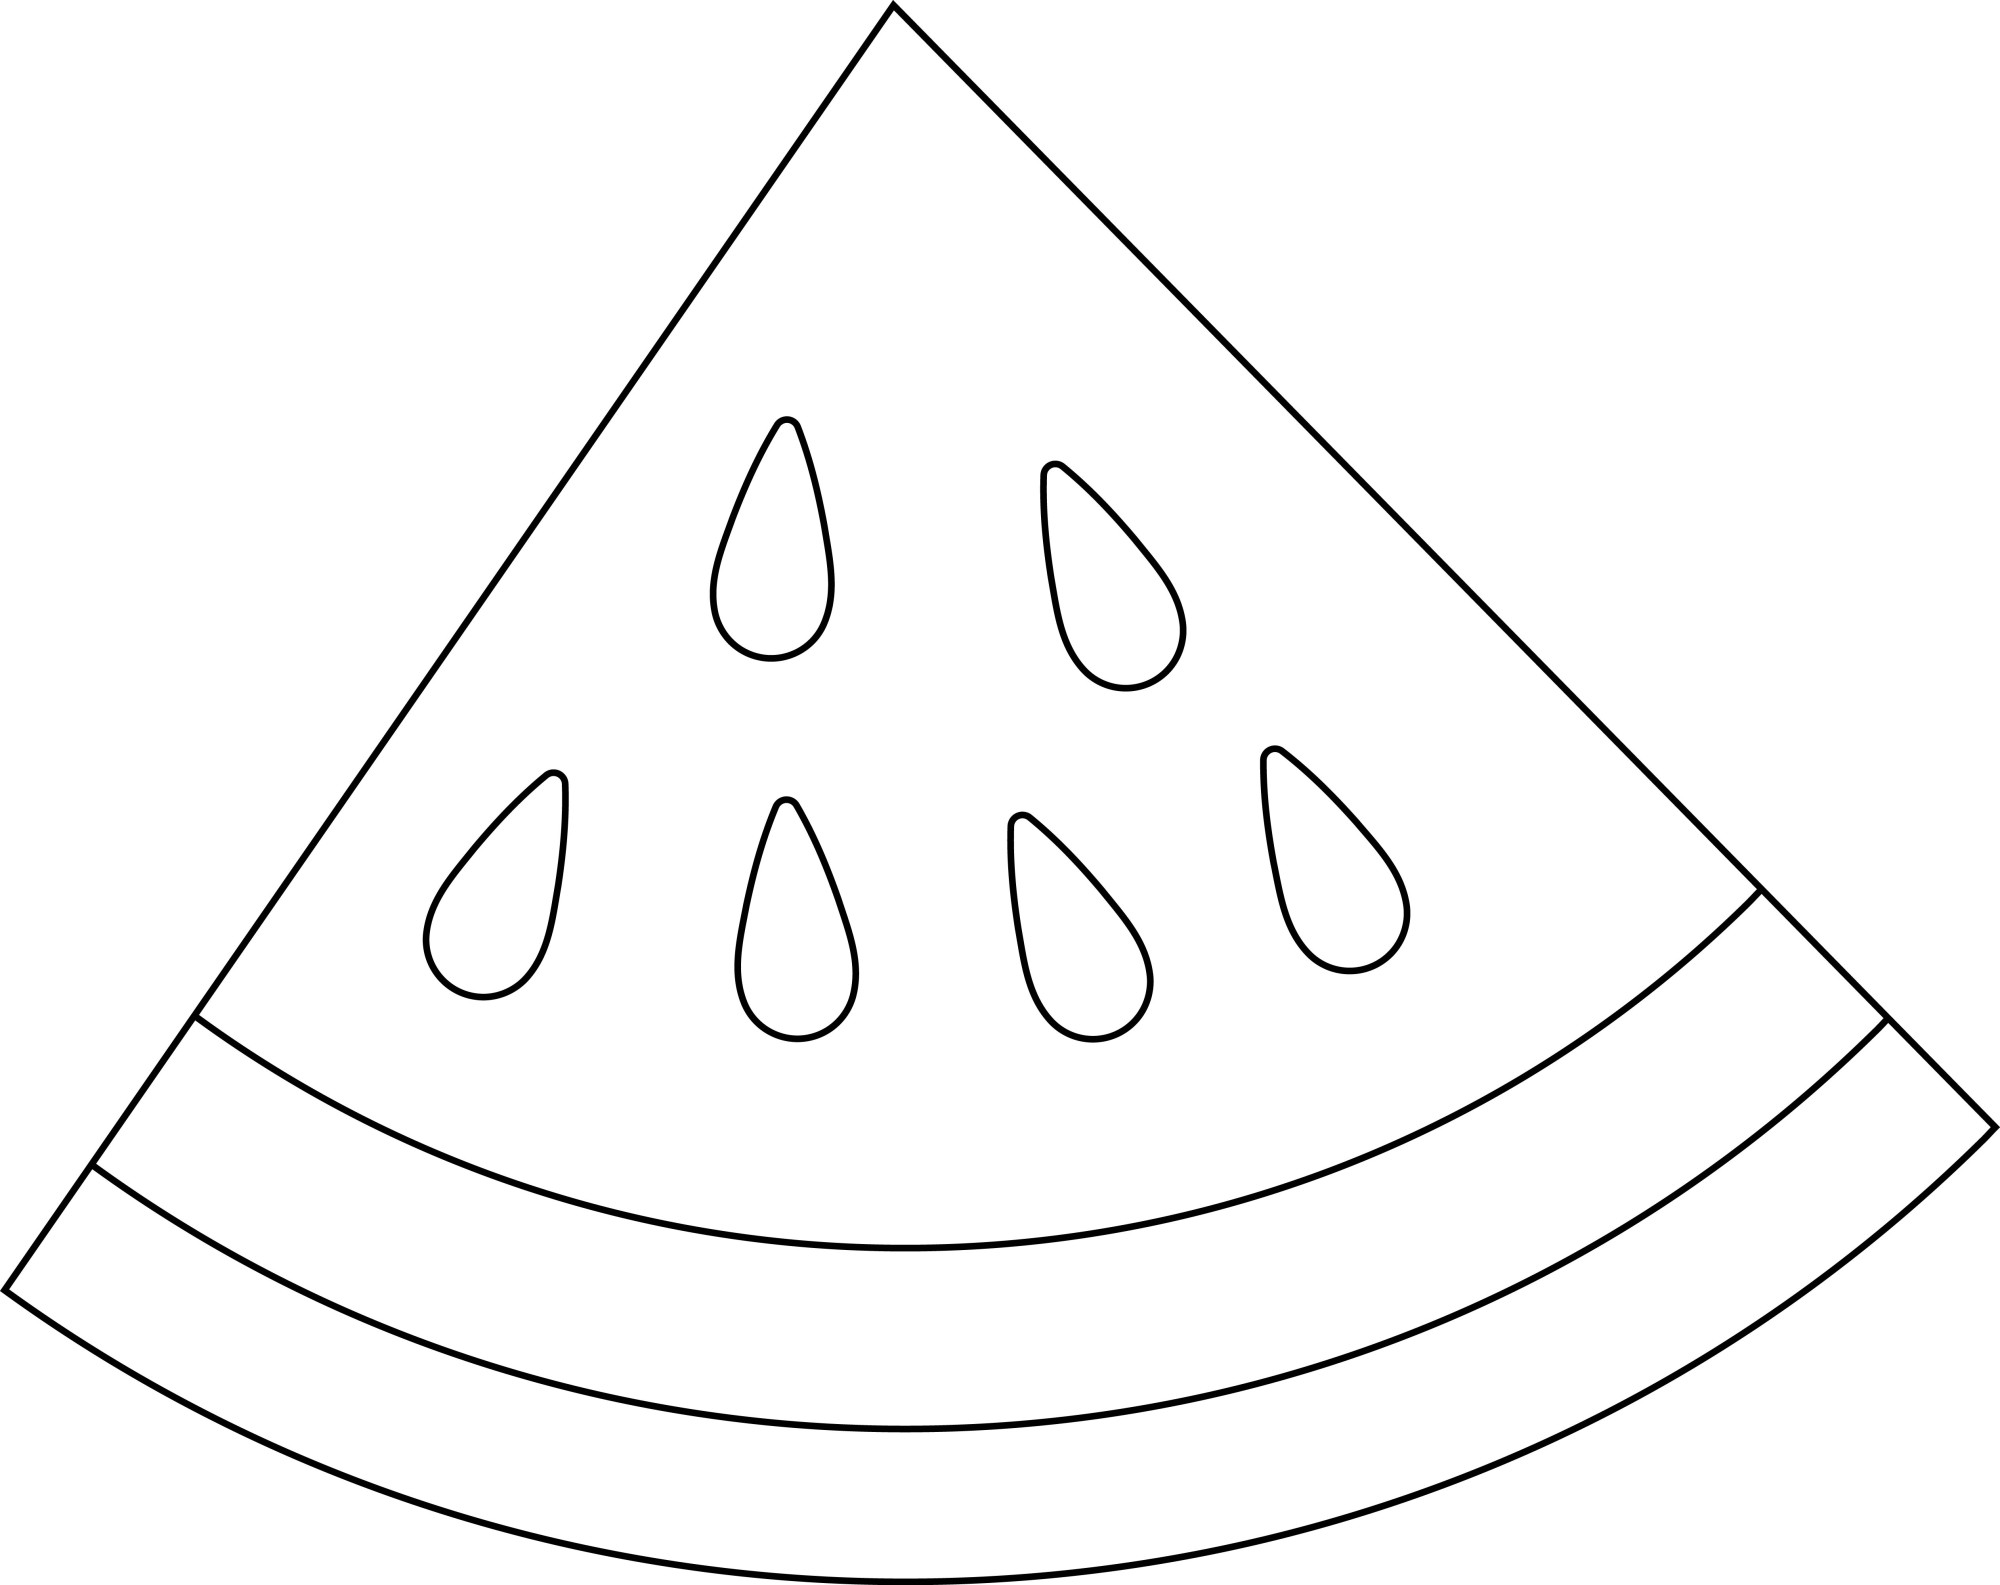 Раскраска для детей: треугольная красивая долька арбуза